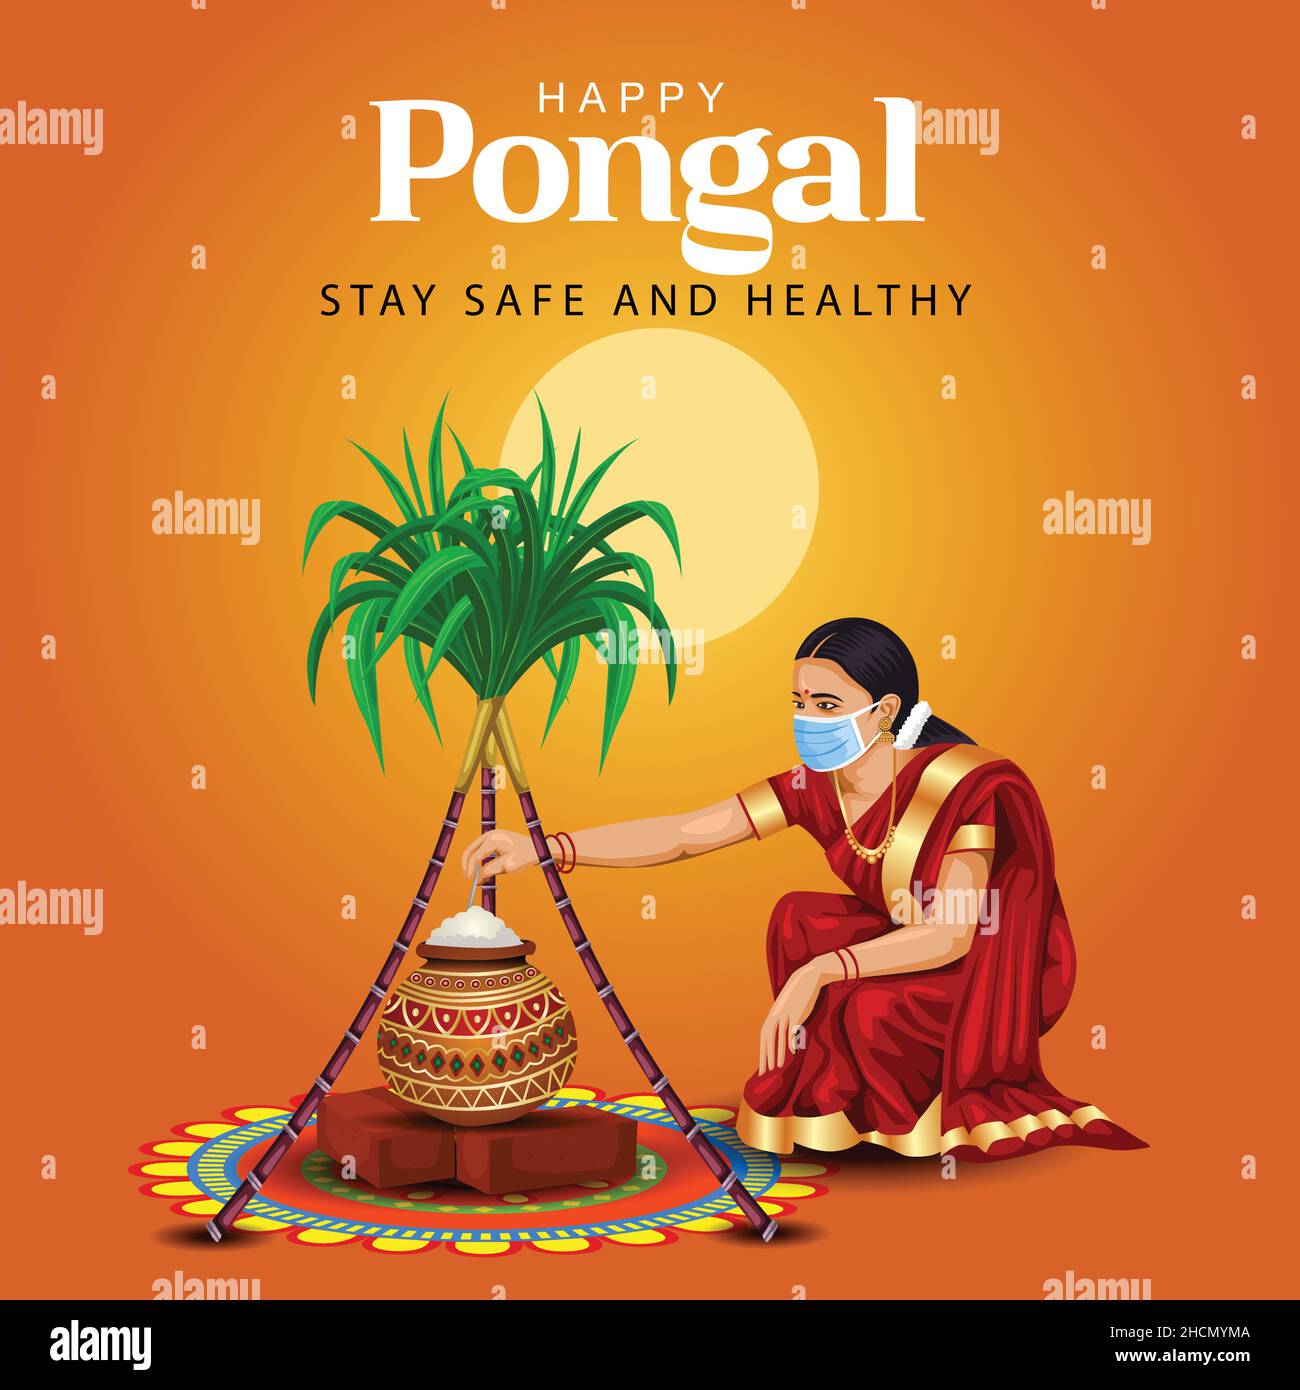 Happy Pongal Feier mit Zuckerrohr, Rangoli, Topf und Reis. Tamilisches Mädchen trägt Gesichtsmaske. Indisches kulturelles Festival Feier Konzept Vektor illu Stock Vektor